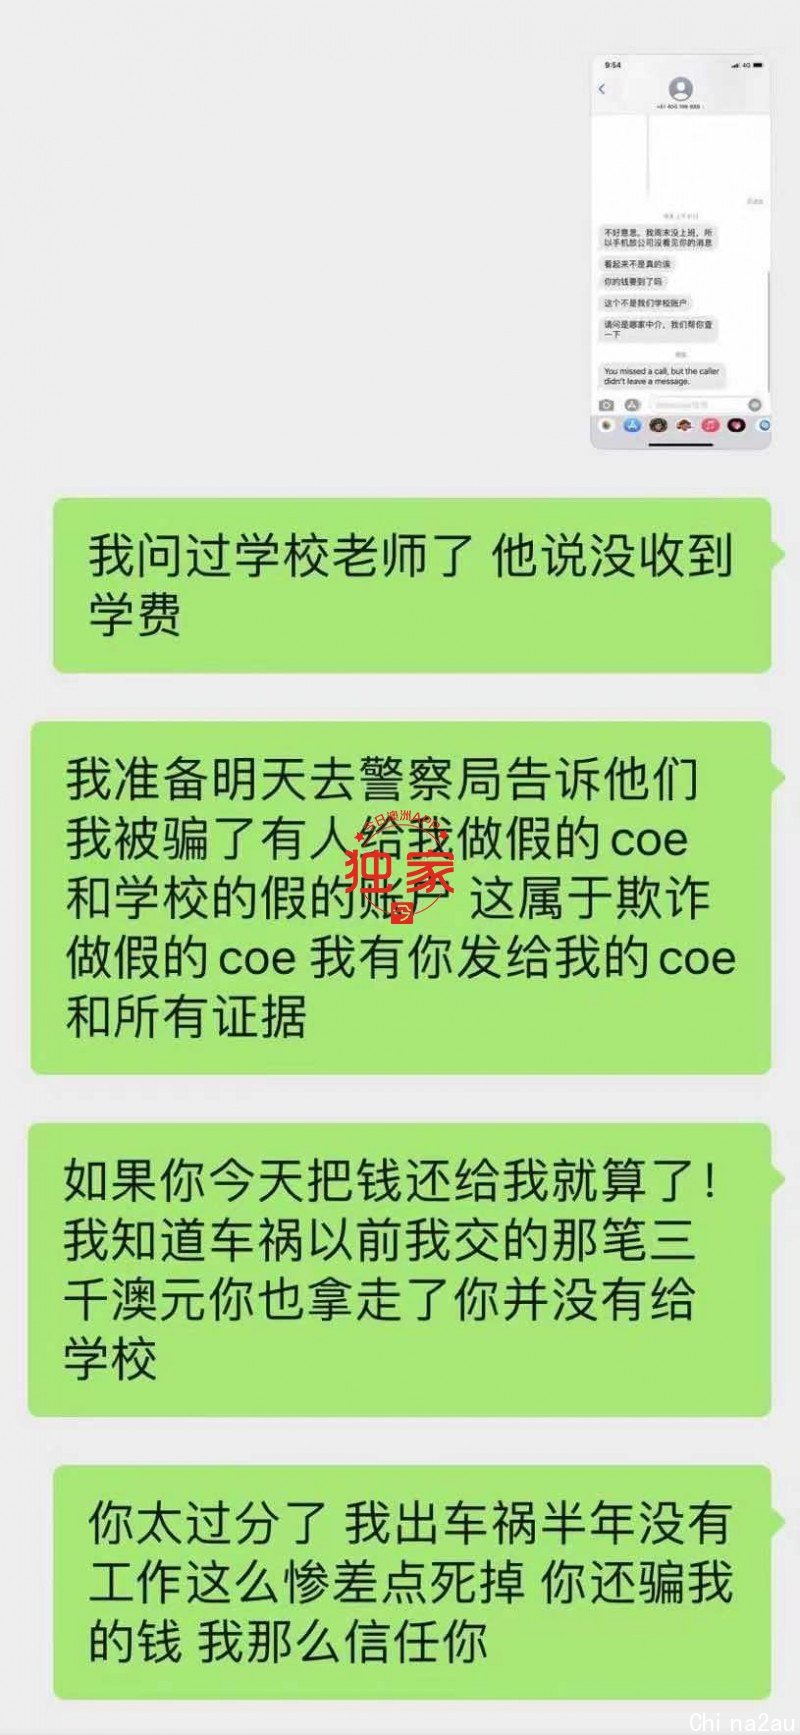 WeChat Image_20210316165320.jpg,12